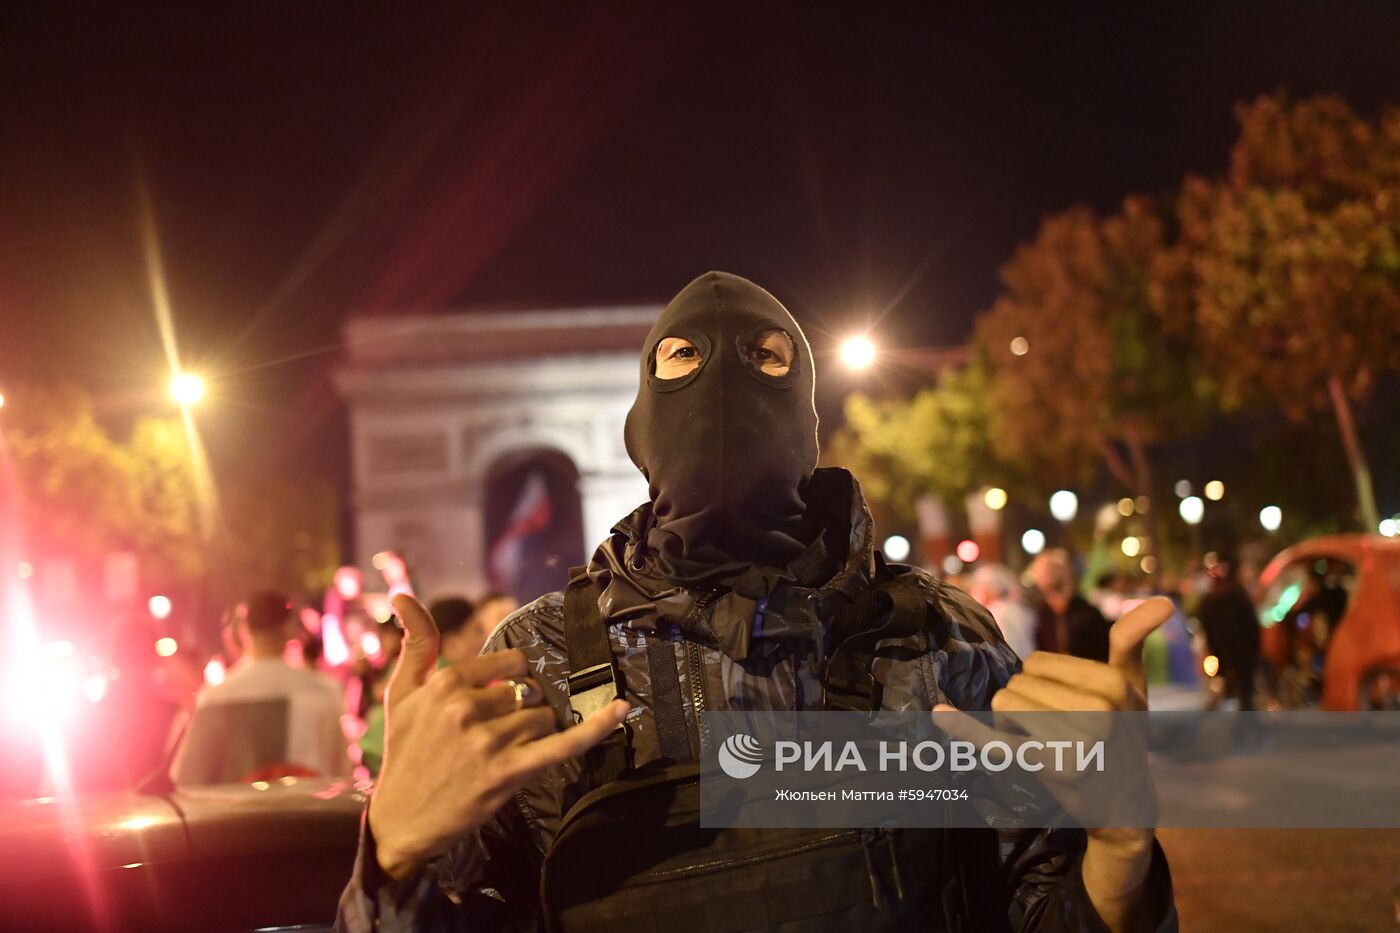 Болельщики сборной Алжира устроили беспорядки в центре Парижа 